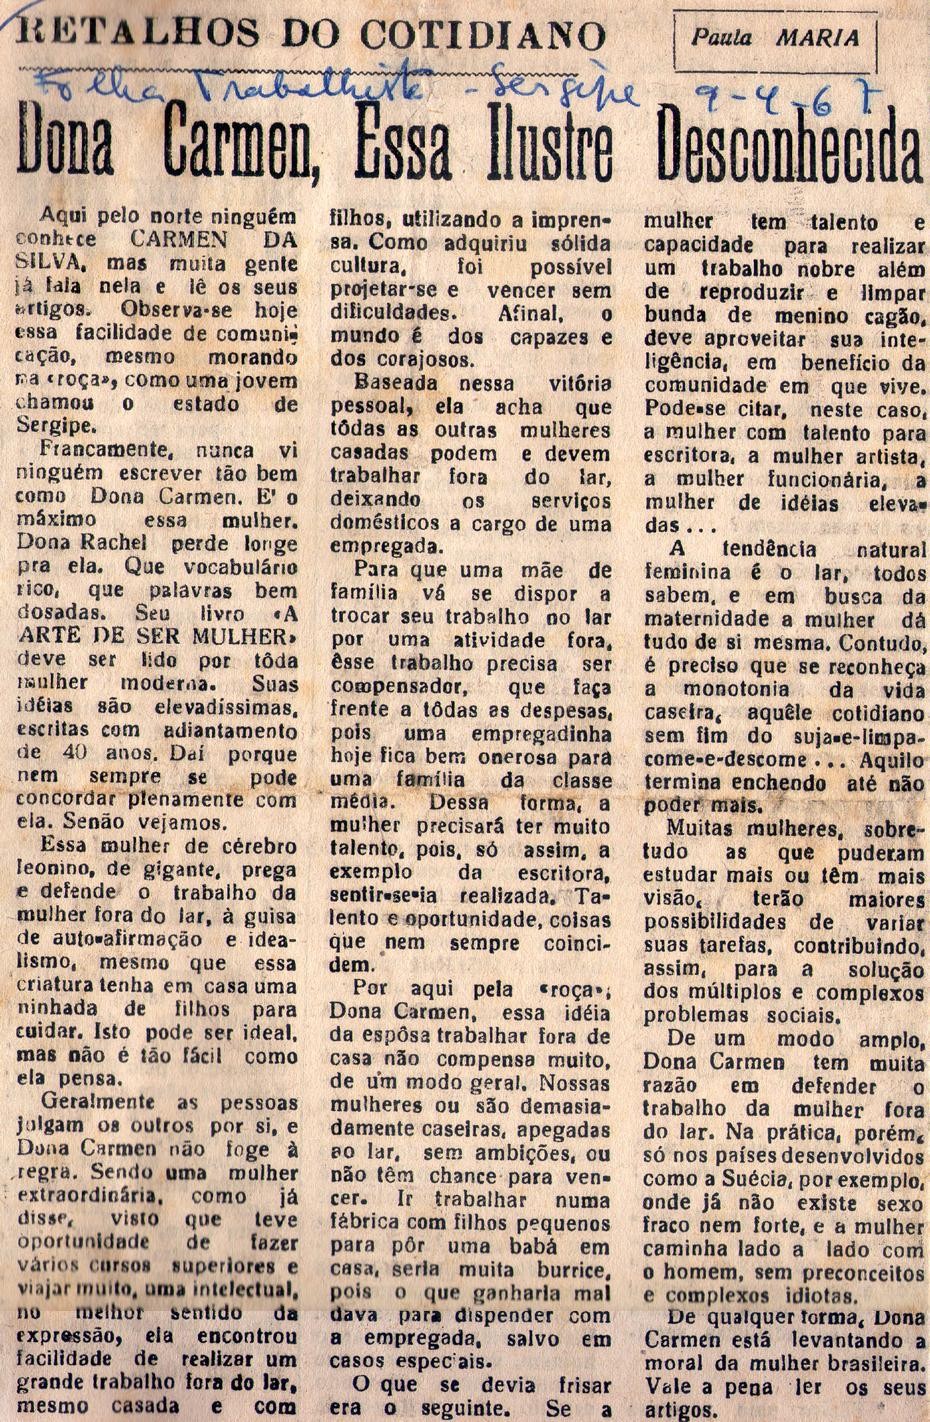 09 de Abril de 1967 - Folha Trabalhista. Dona Carmen, Essa Ilustre Desconhecida.